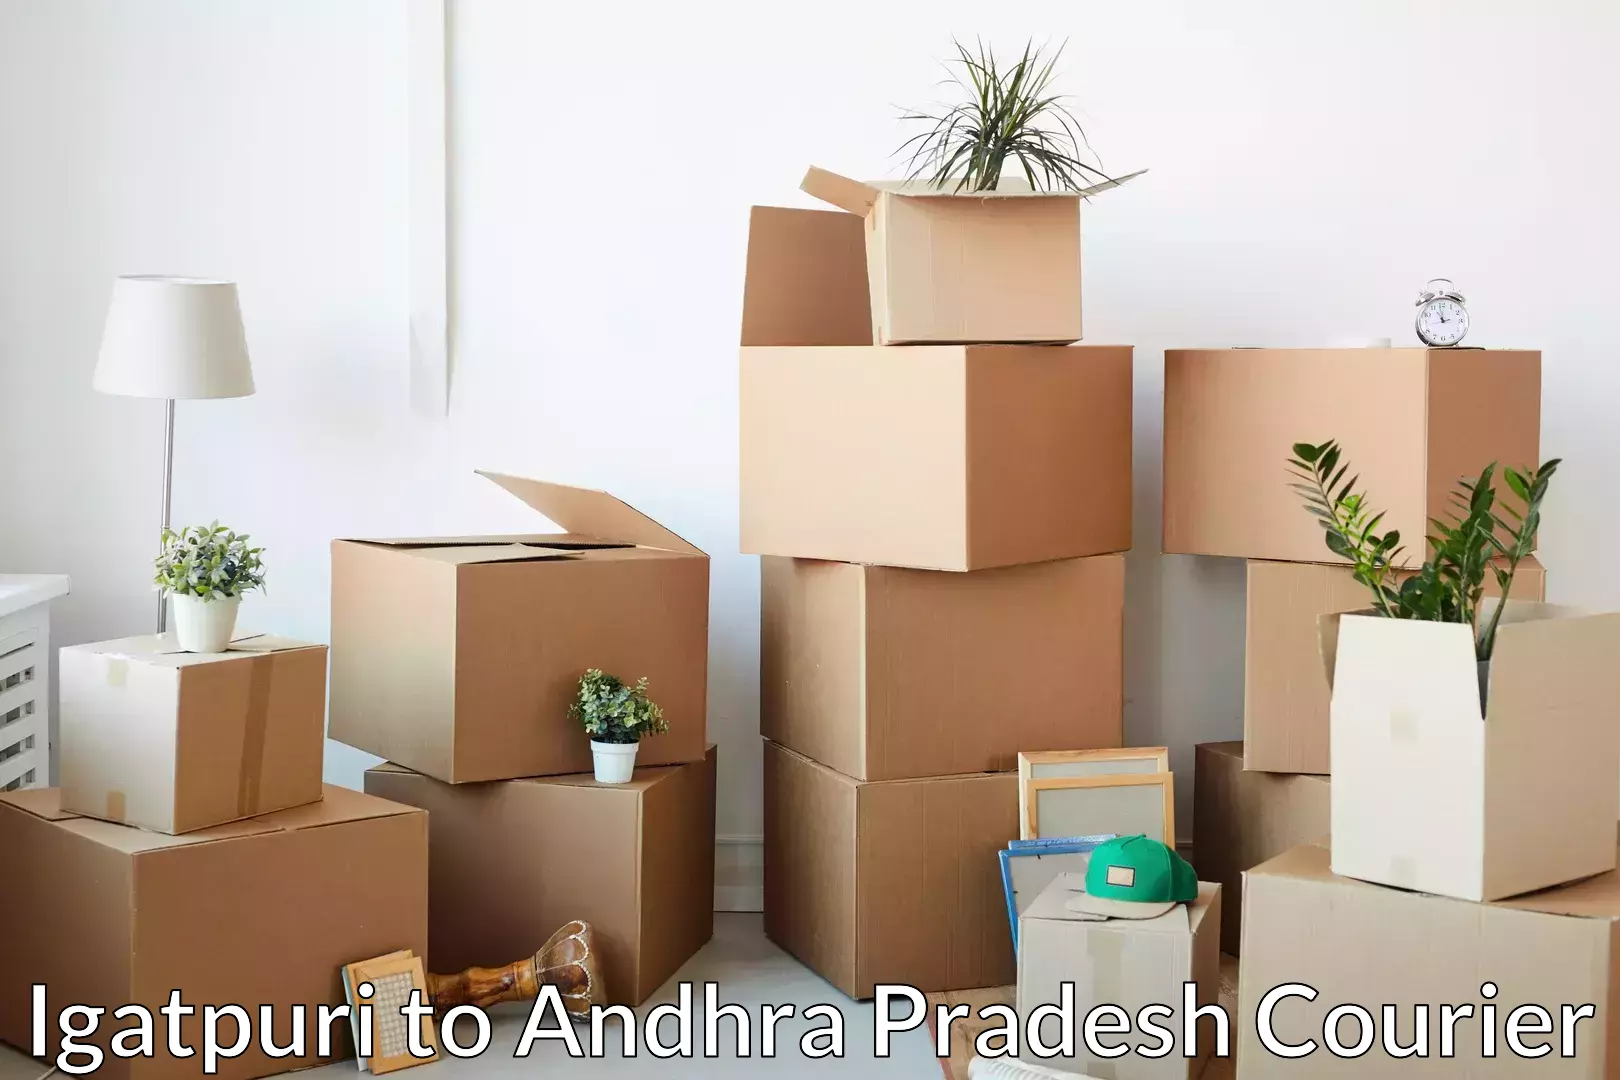 Furniture moving services Igatpuri to Andhra Pradesh